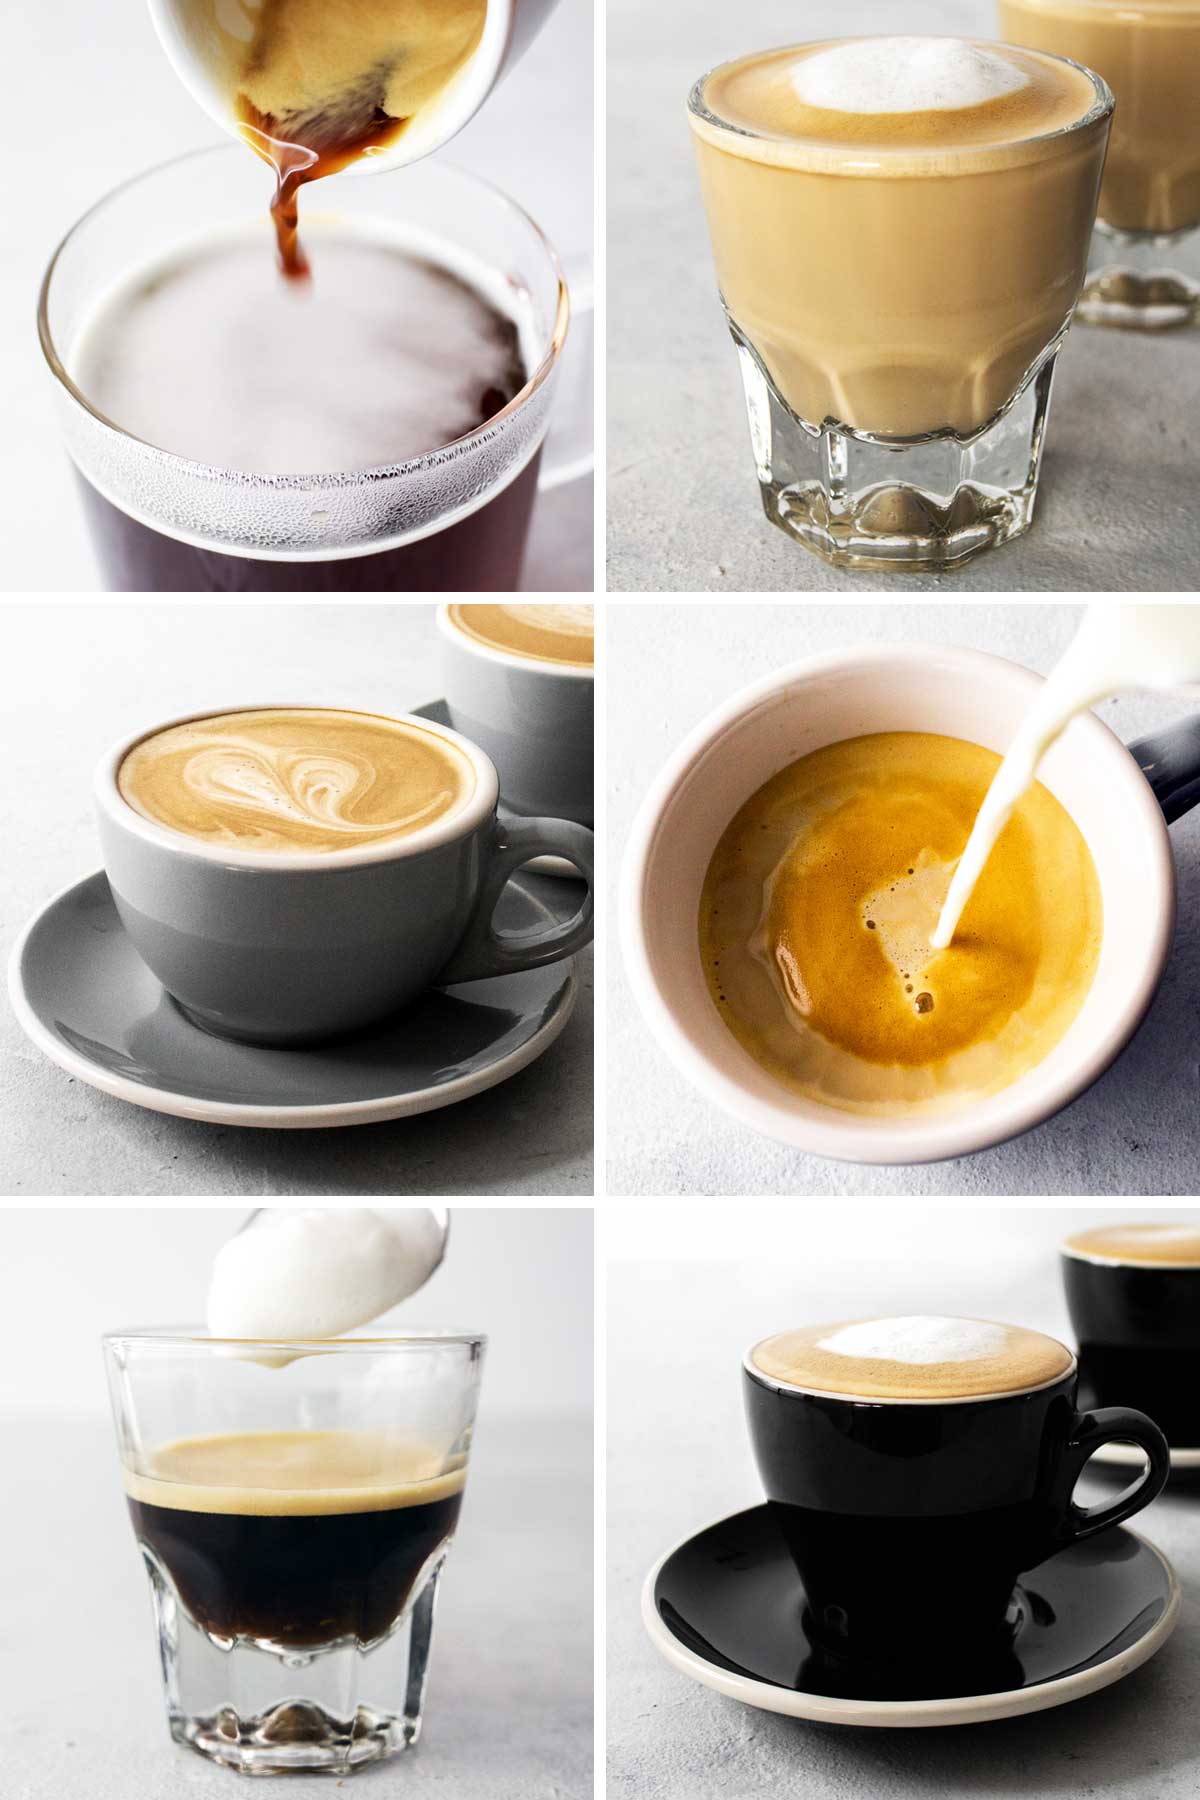 6 foto's van verschillende koffiedranken.